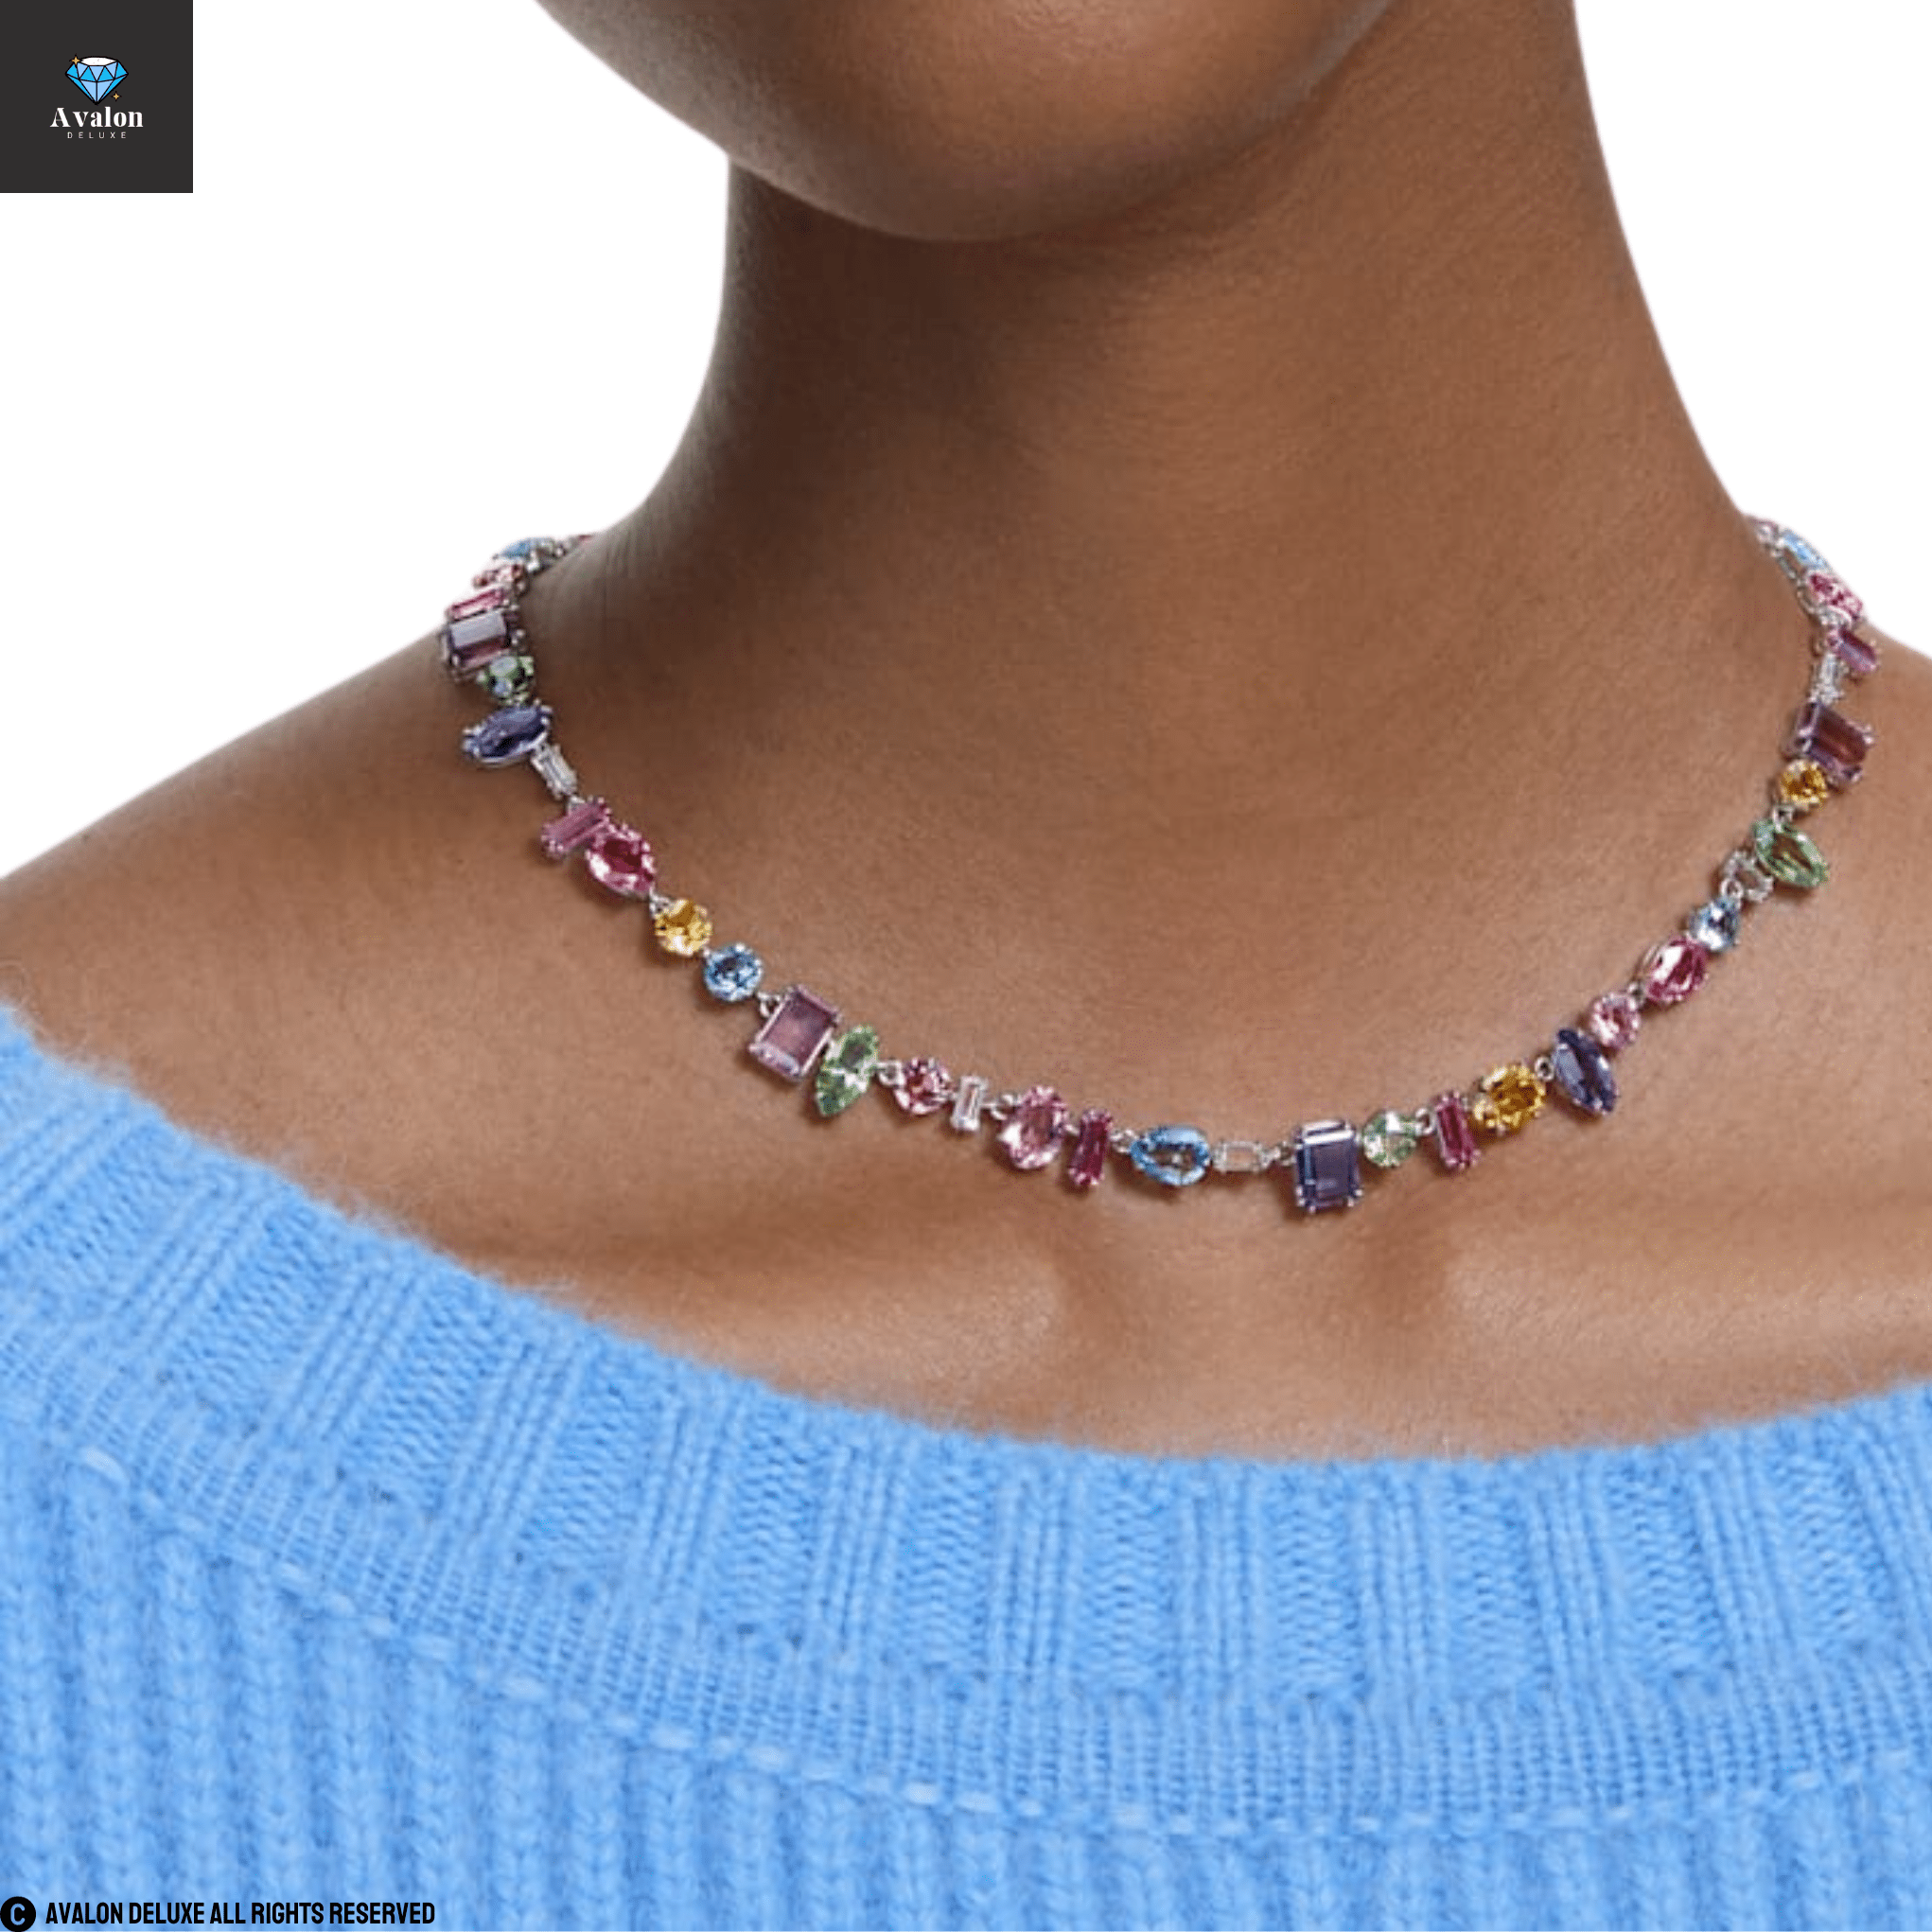 Avalon Gemstone Halskette mehrfarbige rhodinierte Steine